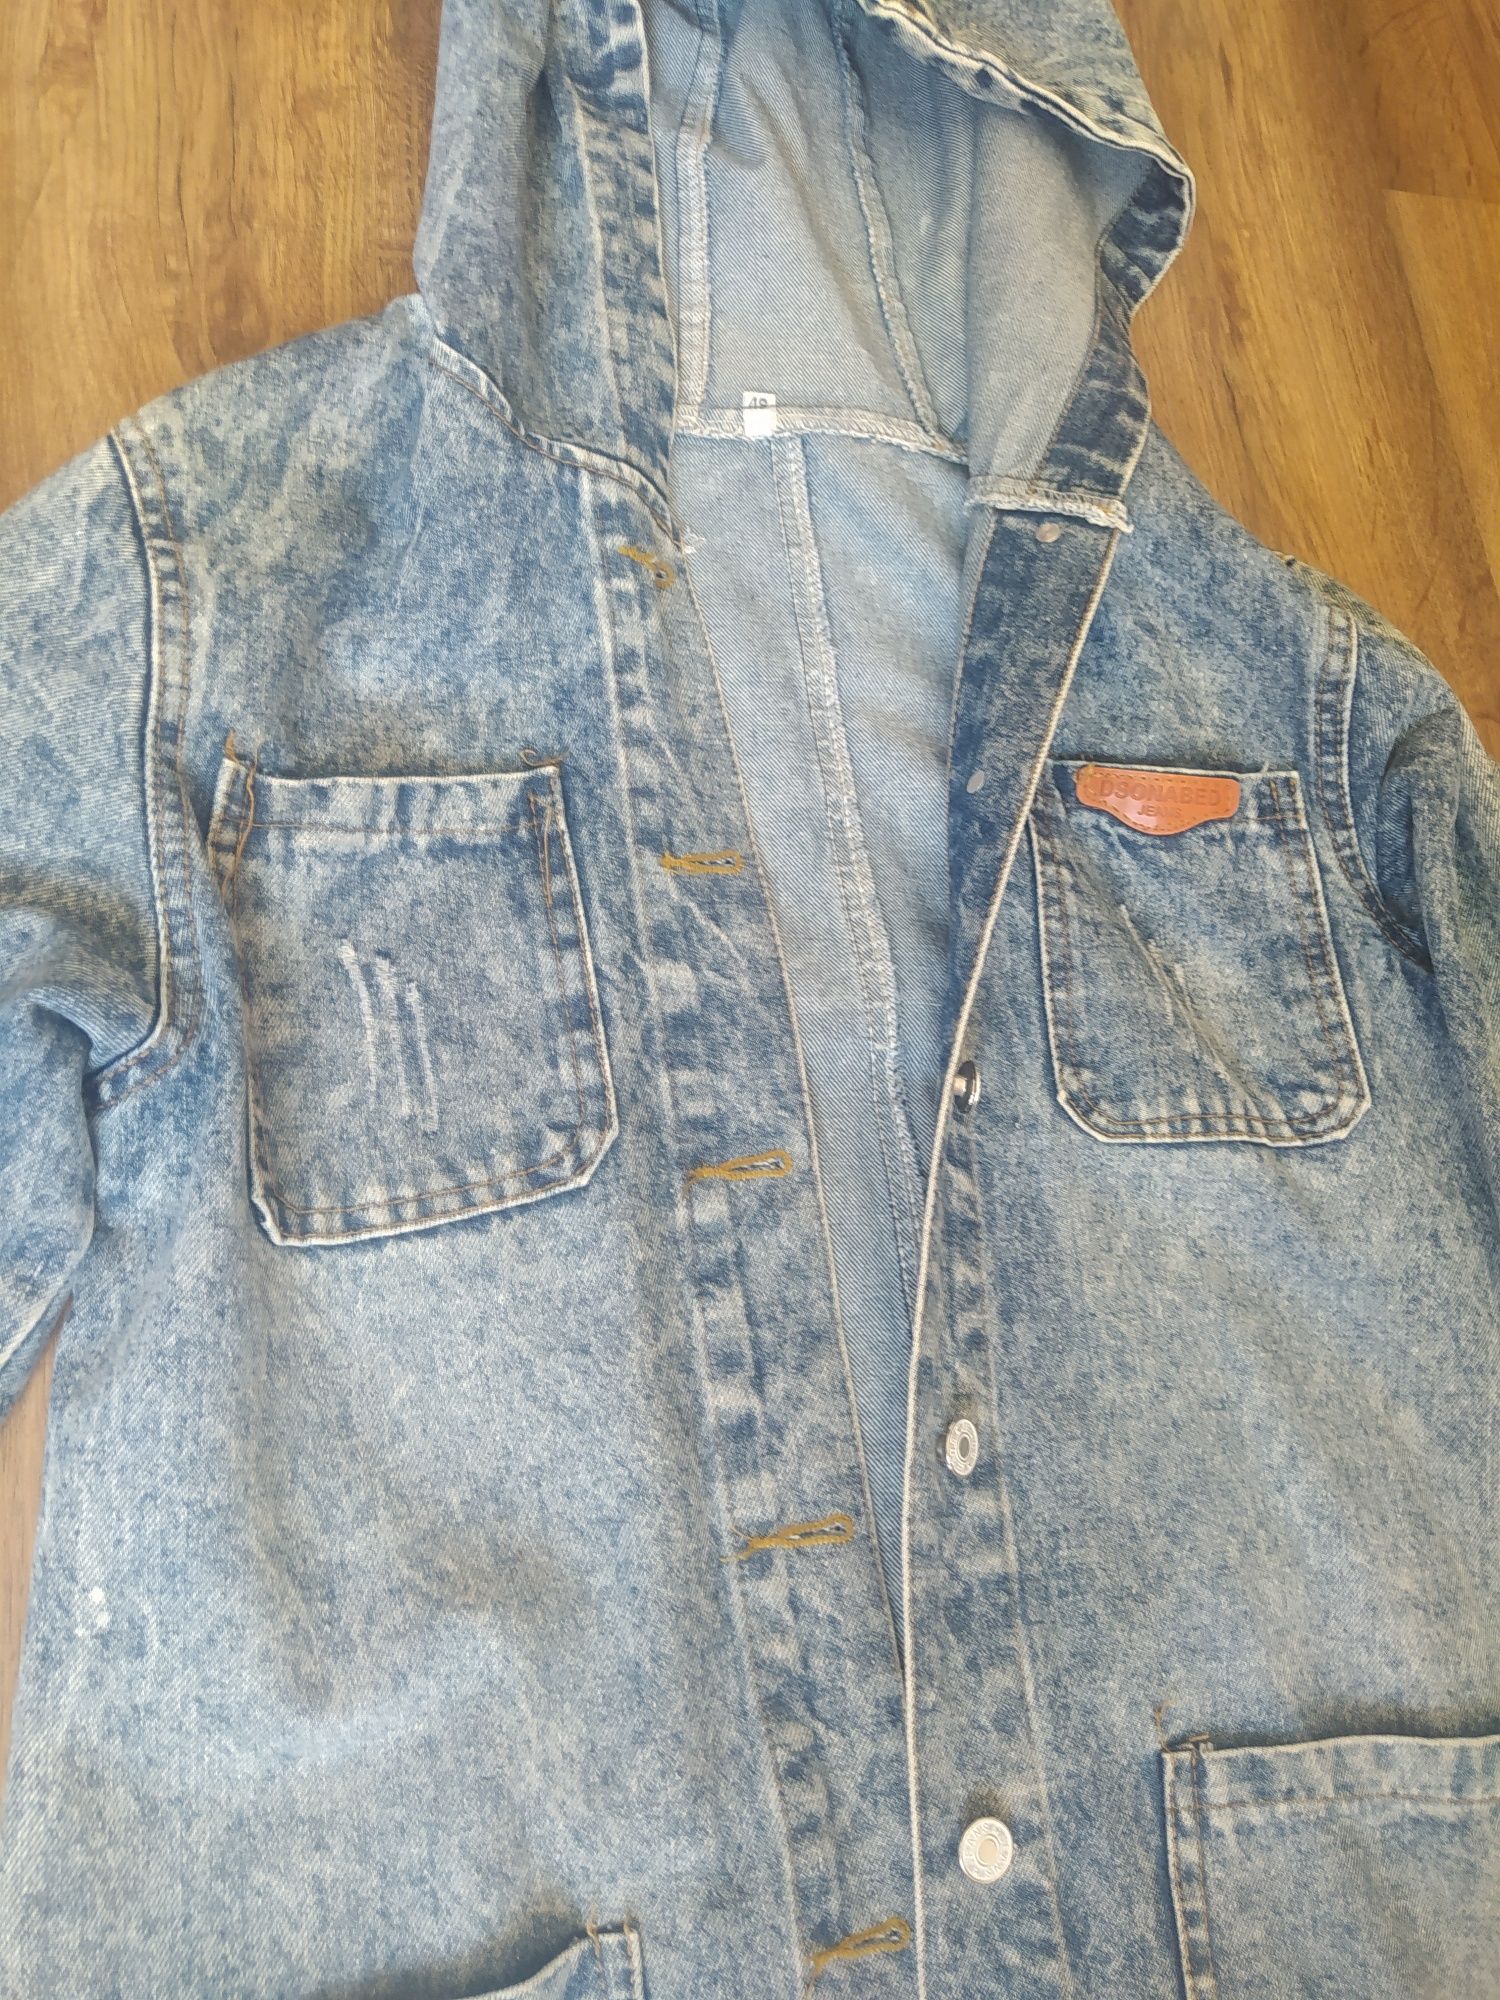 Удлиненная джинсовая куртка, курточка, джинсовка 46-48